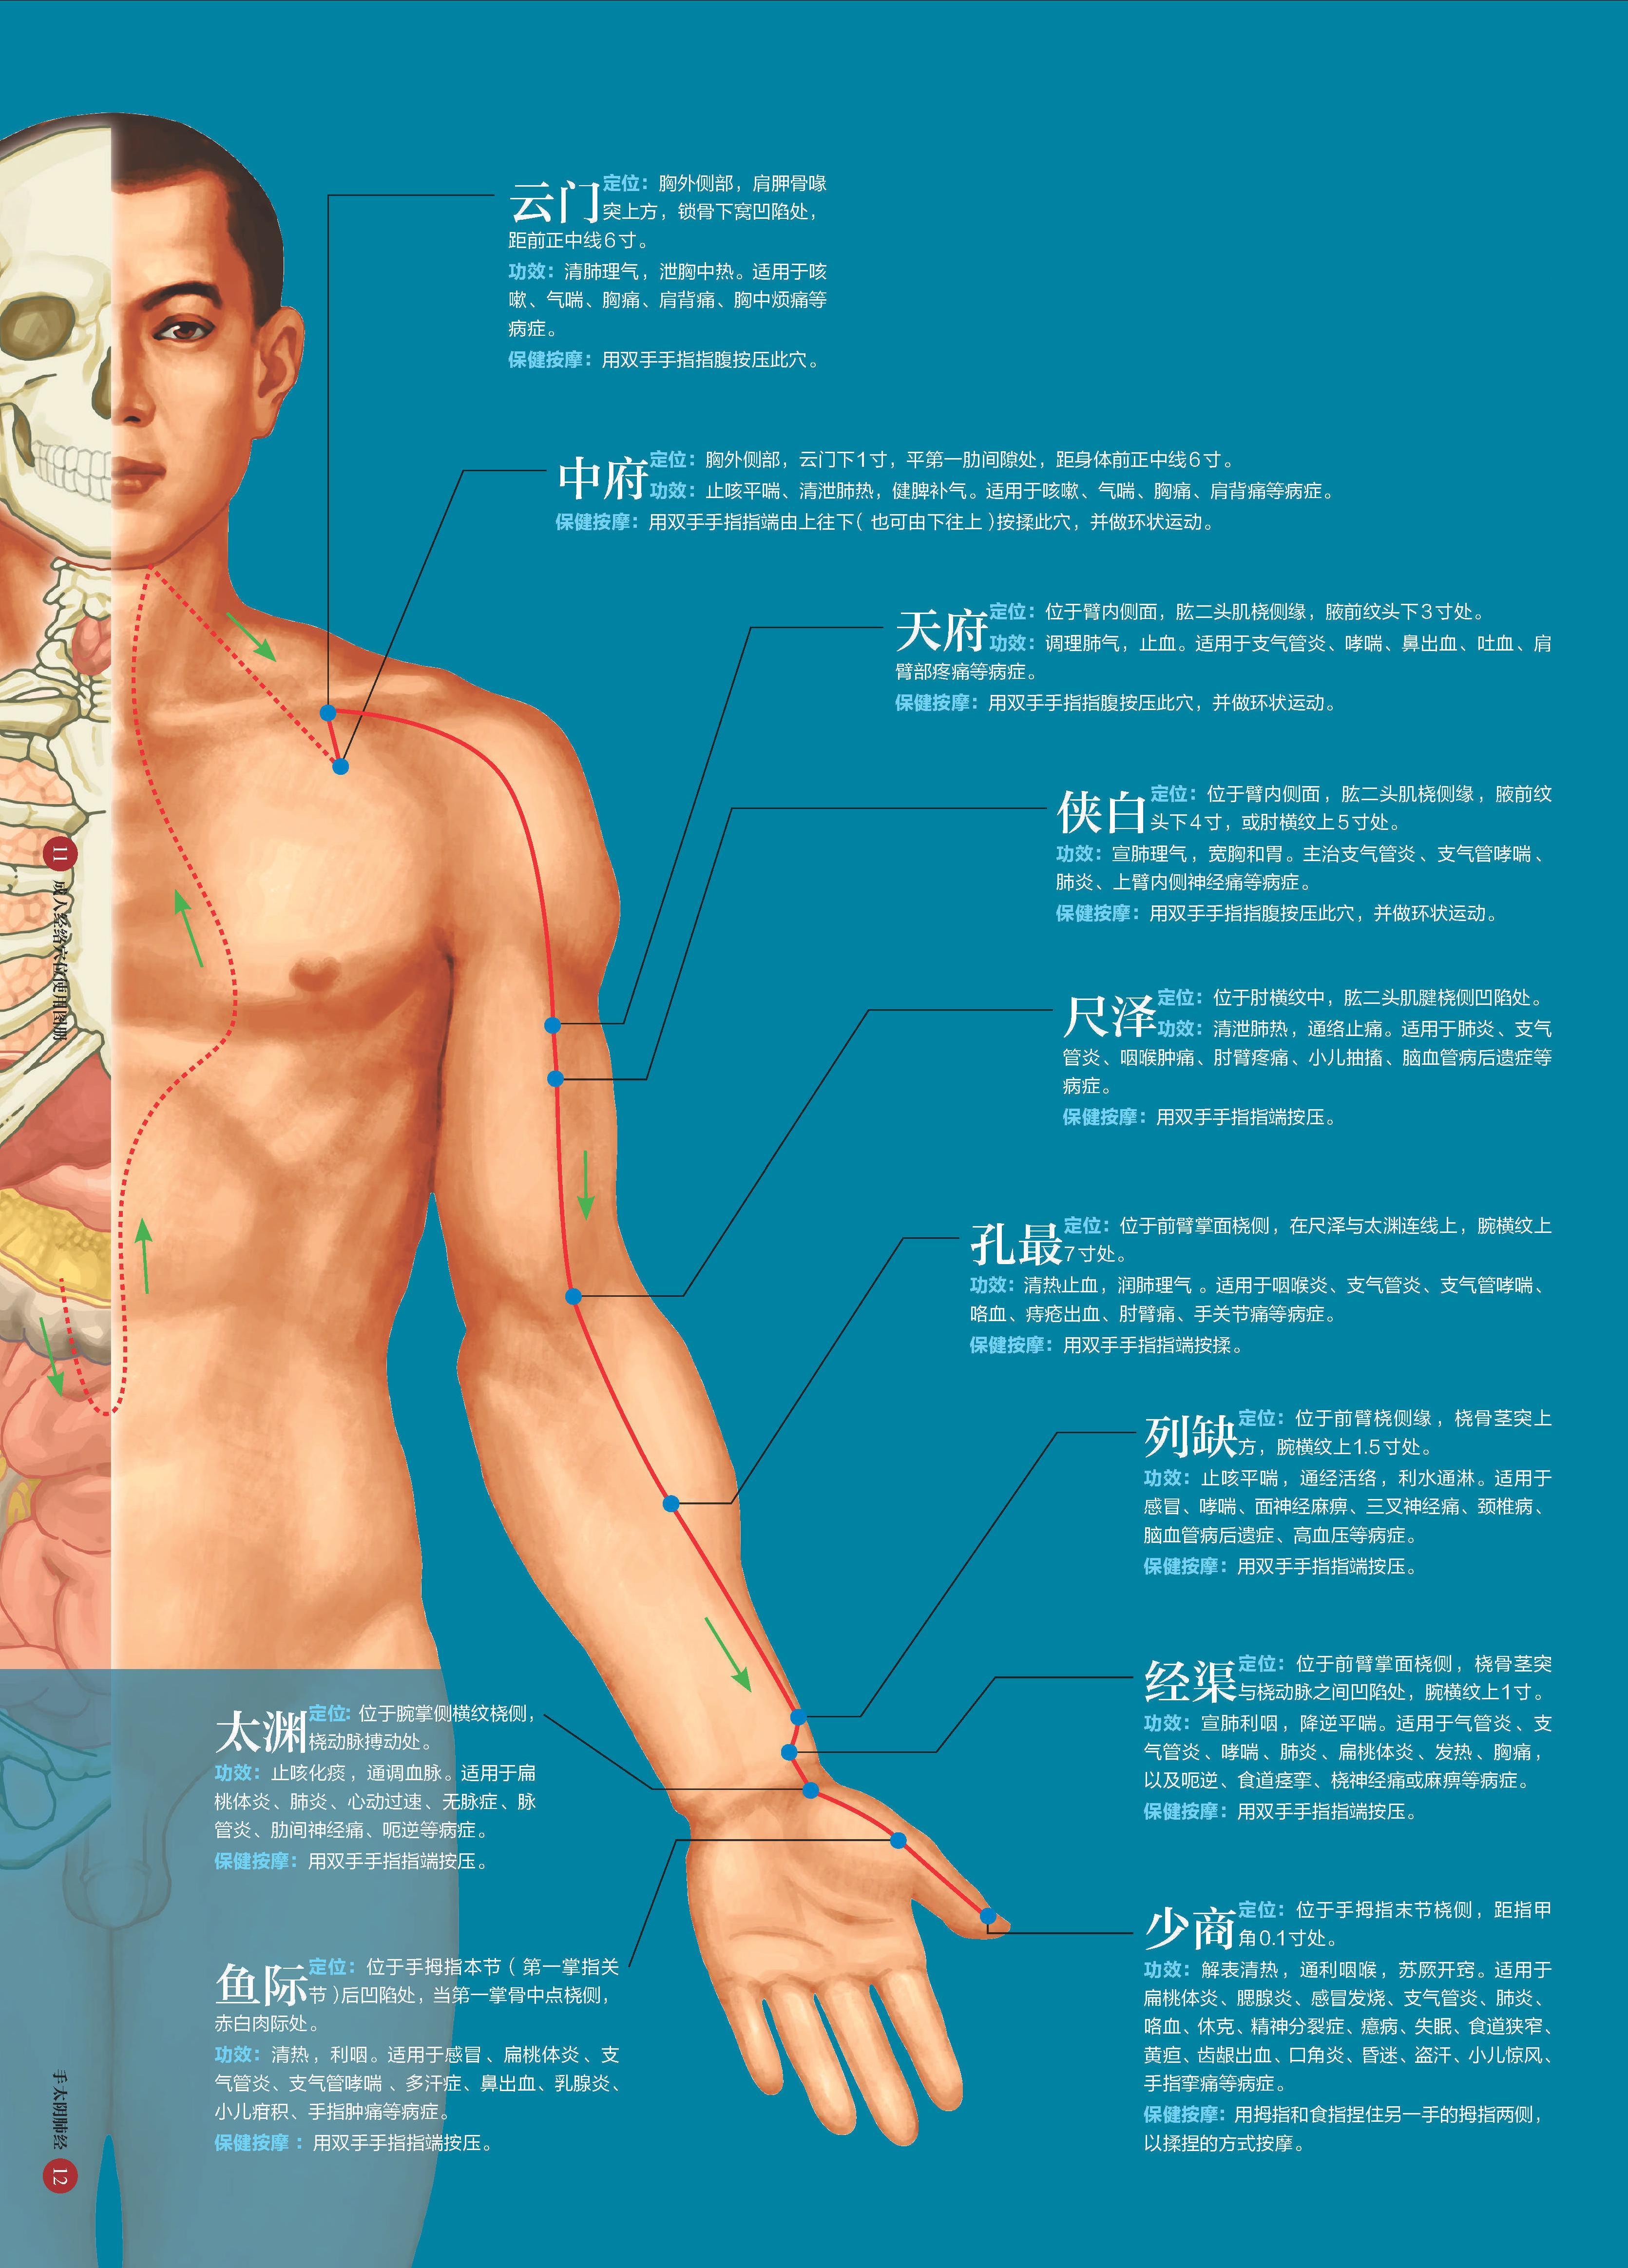 图4-14 涡静脉-人体解剖学-医学